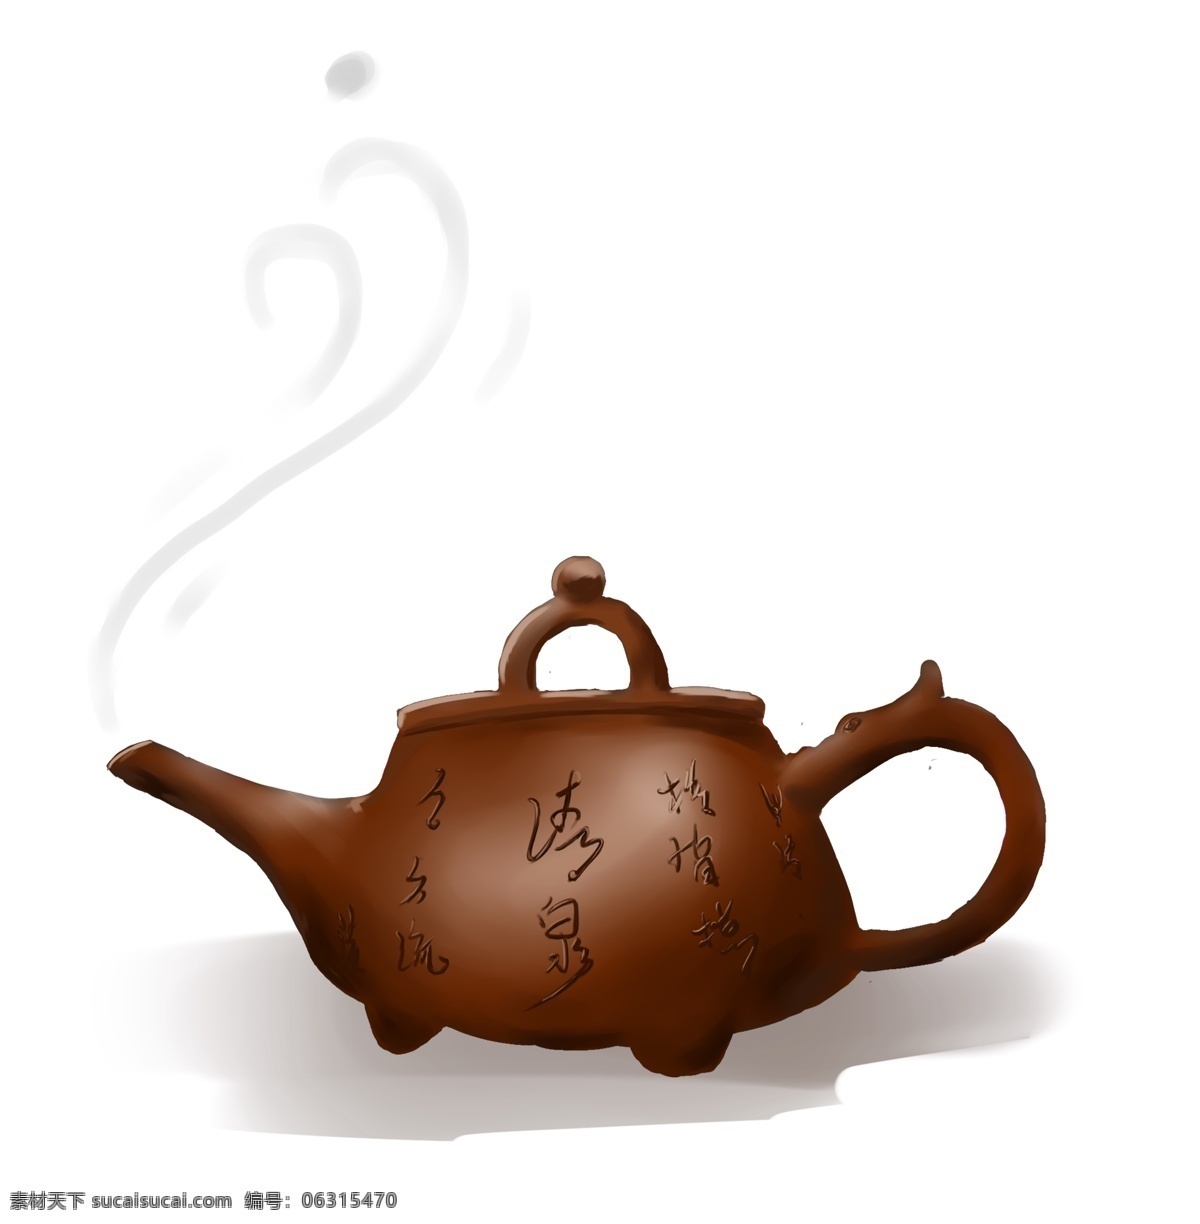 手绘 茶文化 茶壶 装饰 元素 茶 茶叶 中国文化 中国传统 茶道 壶 陶瓷 瓷器 水 喝茶 茶杯 中国风 文化 雅致 烟雾